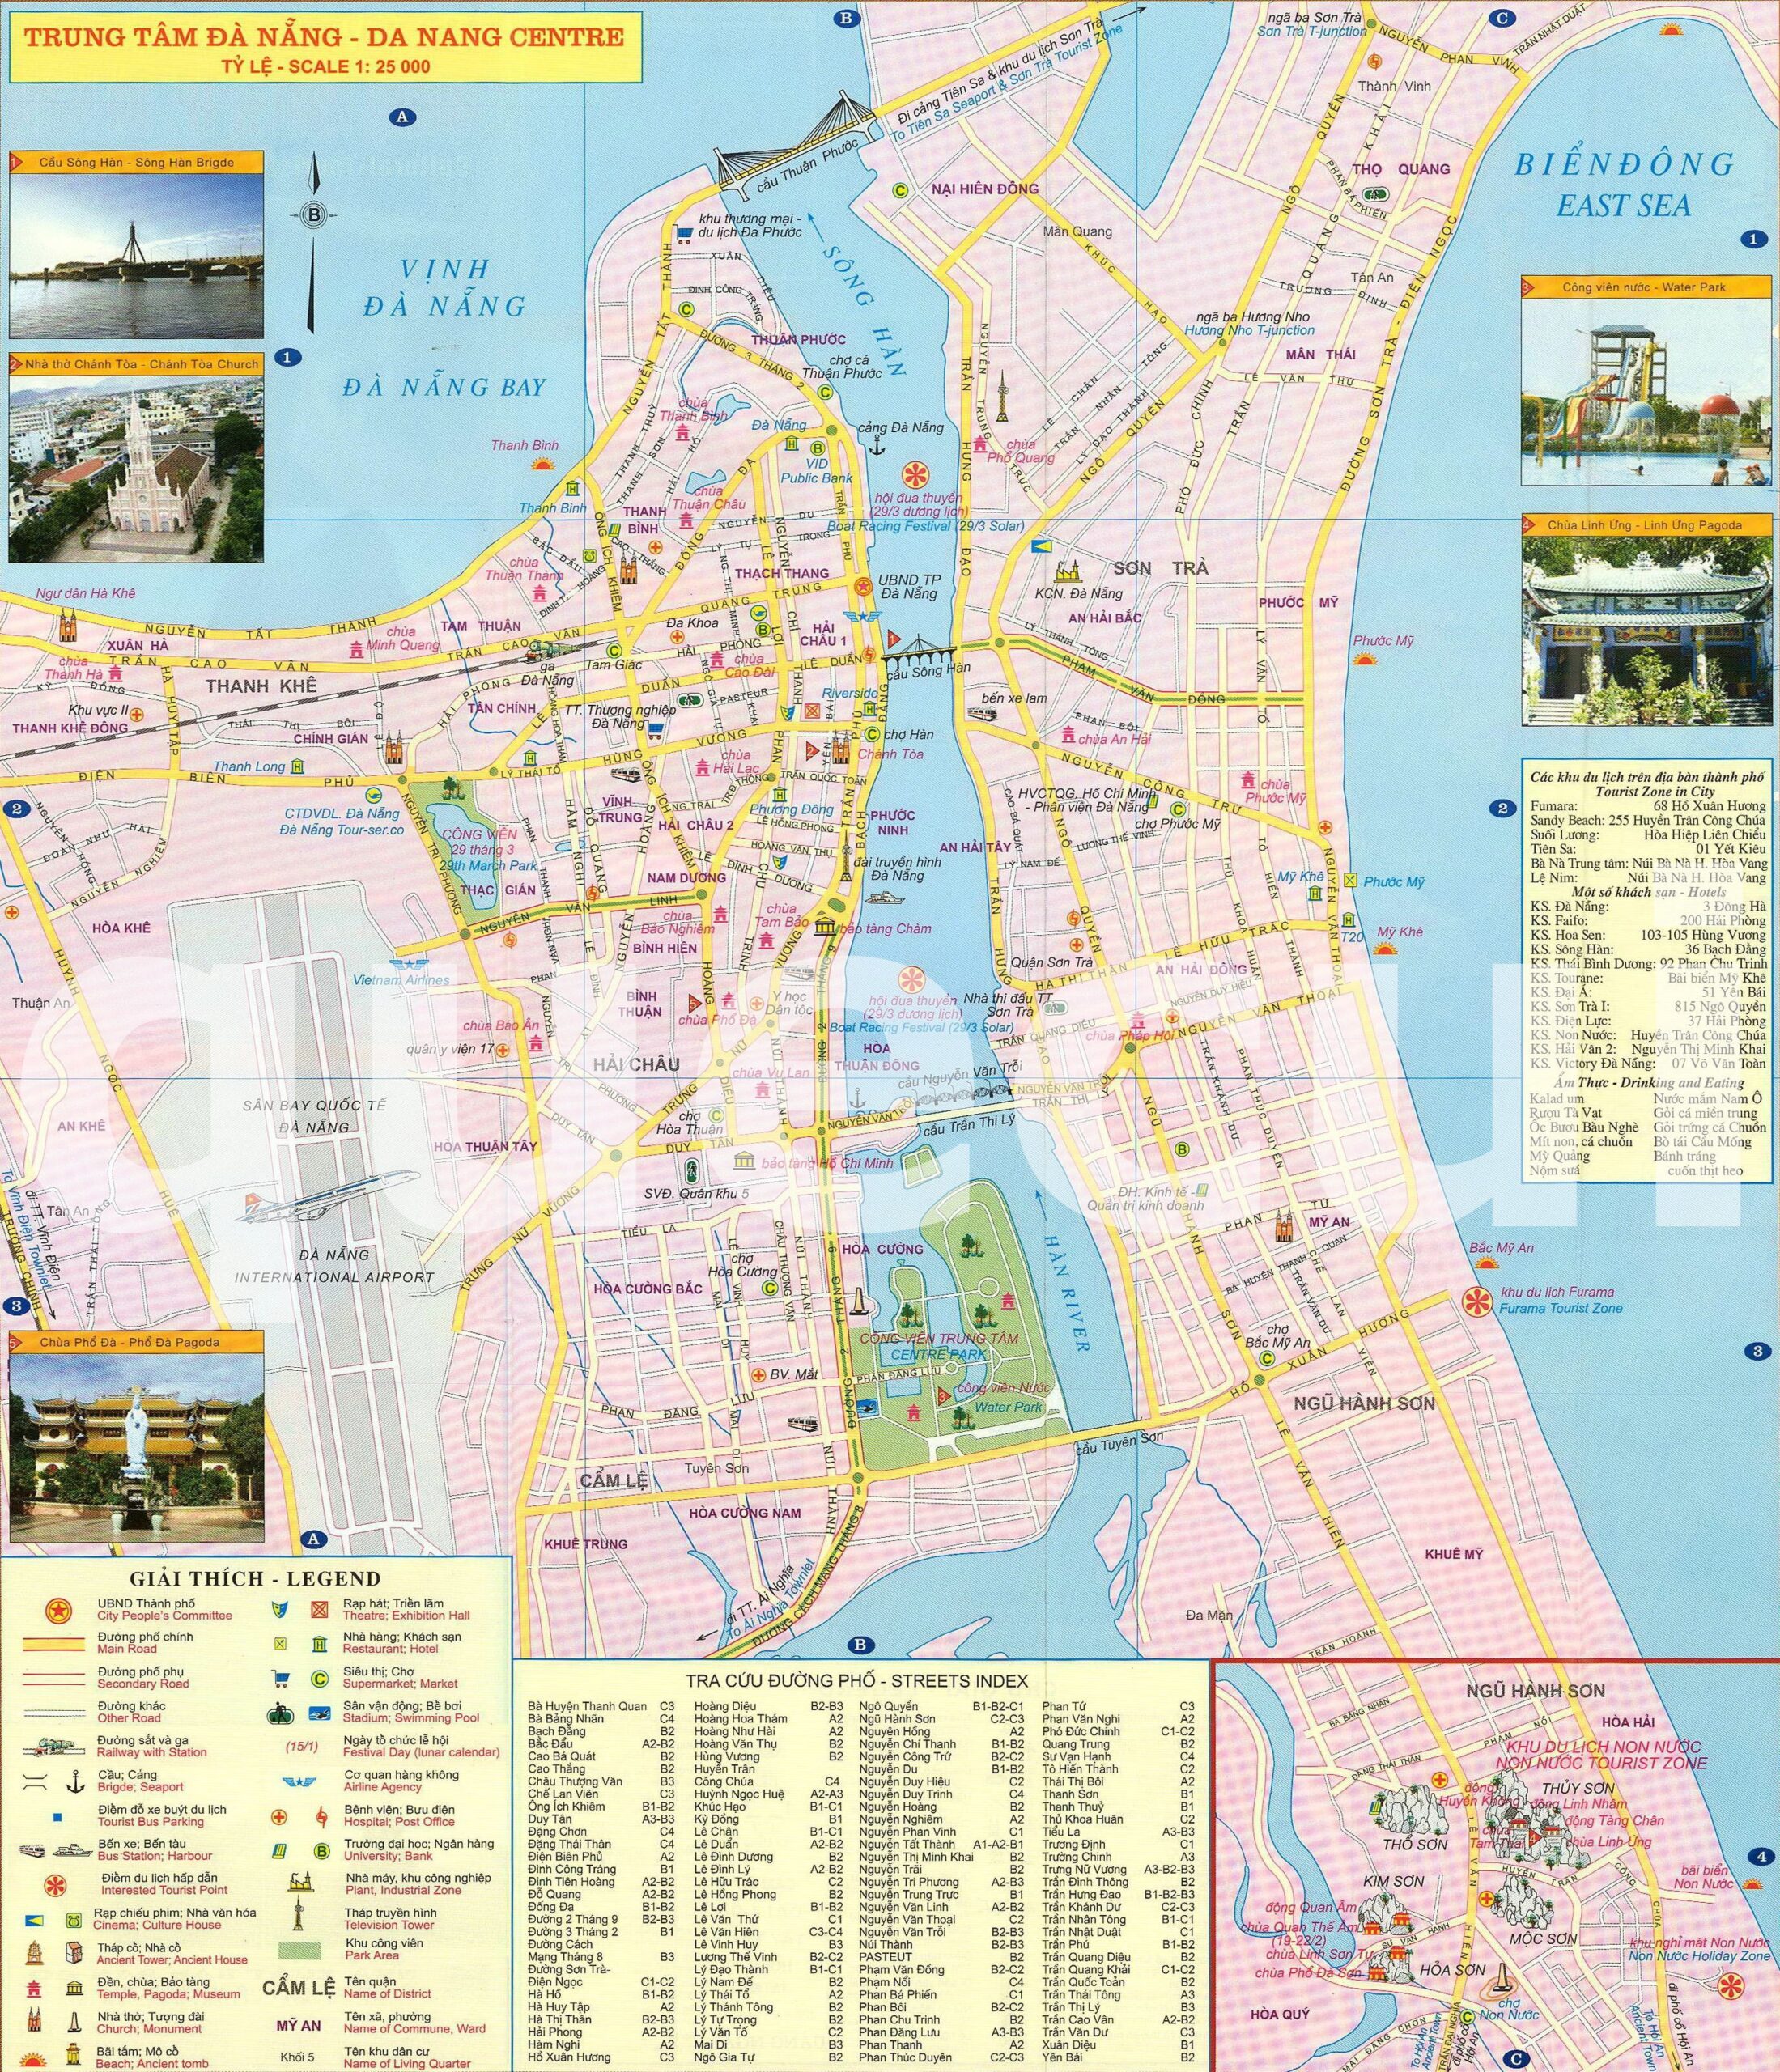 Bản đồ hành chính Đà Nẵng năm 2024 là một tài liệu quan trọng cho các doanh nghiệp và cư dân địa phương để hiểu rõ hơn về mức độ phát triển của thành phố. Nó cũng cho phép các chuyên gia địa lý và kế hoạch hóa đô thị cập nhật thông tin mới nhất để đưa ra các quyết định phát triển đúng đắn.